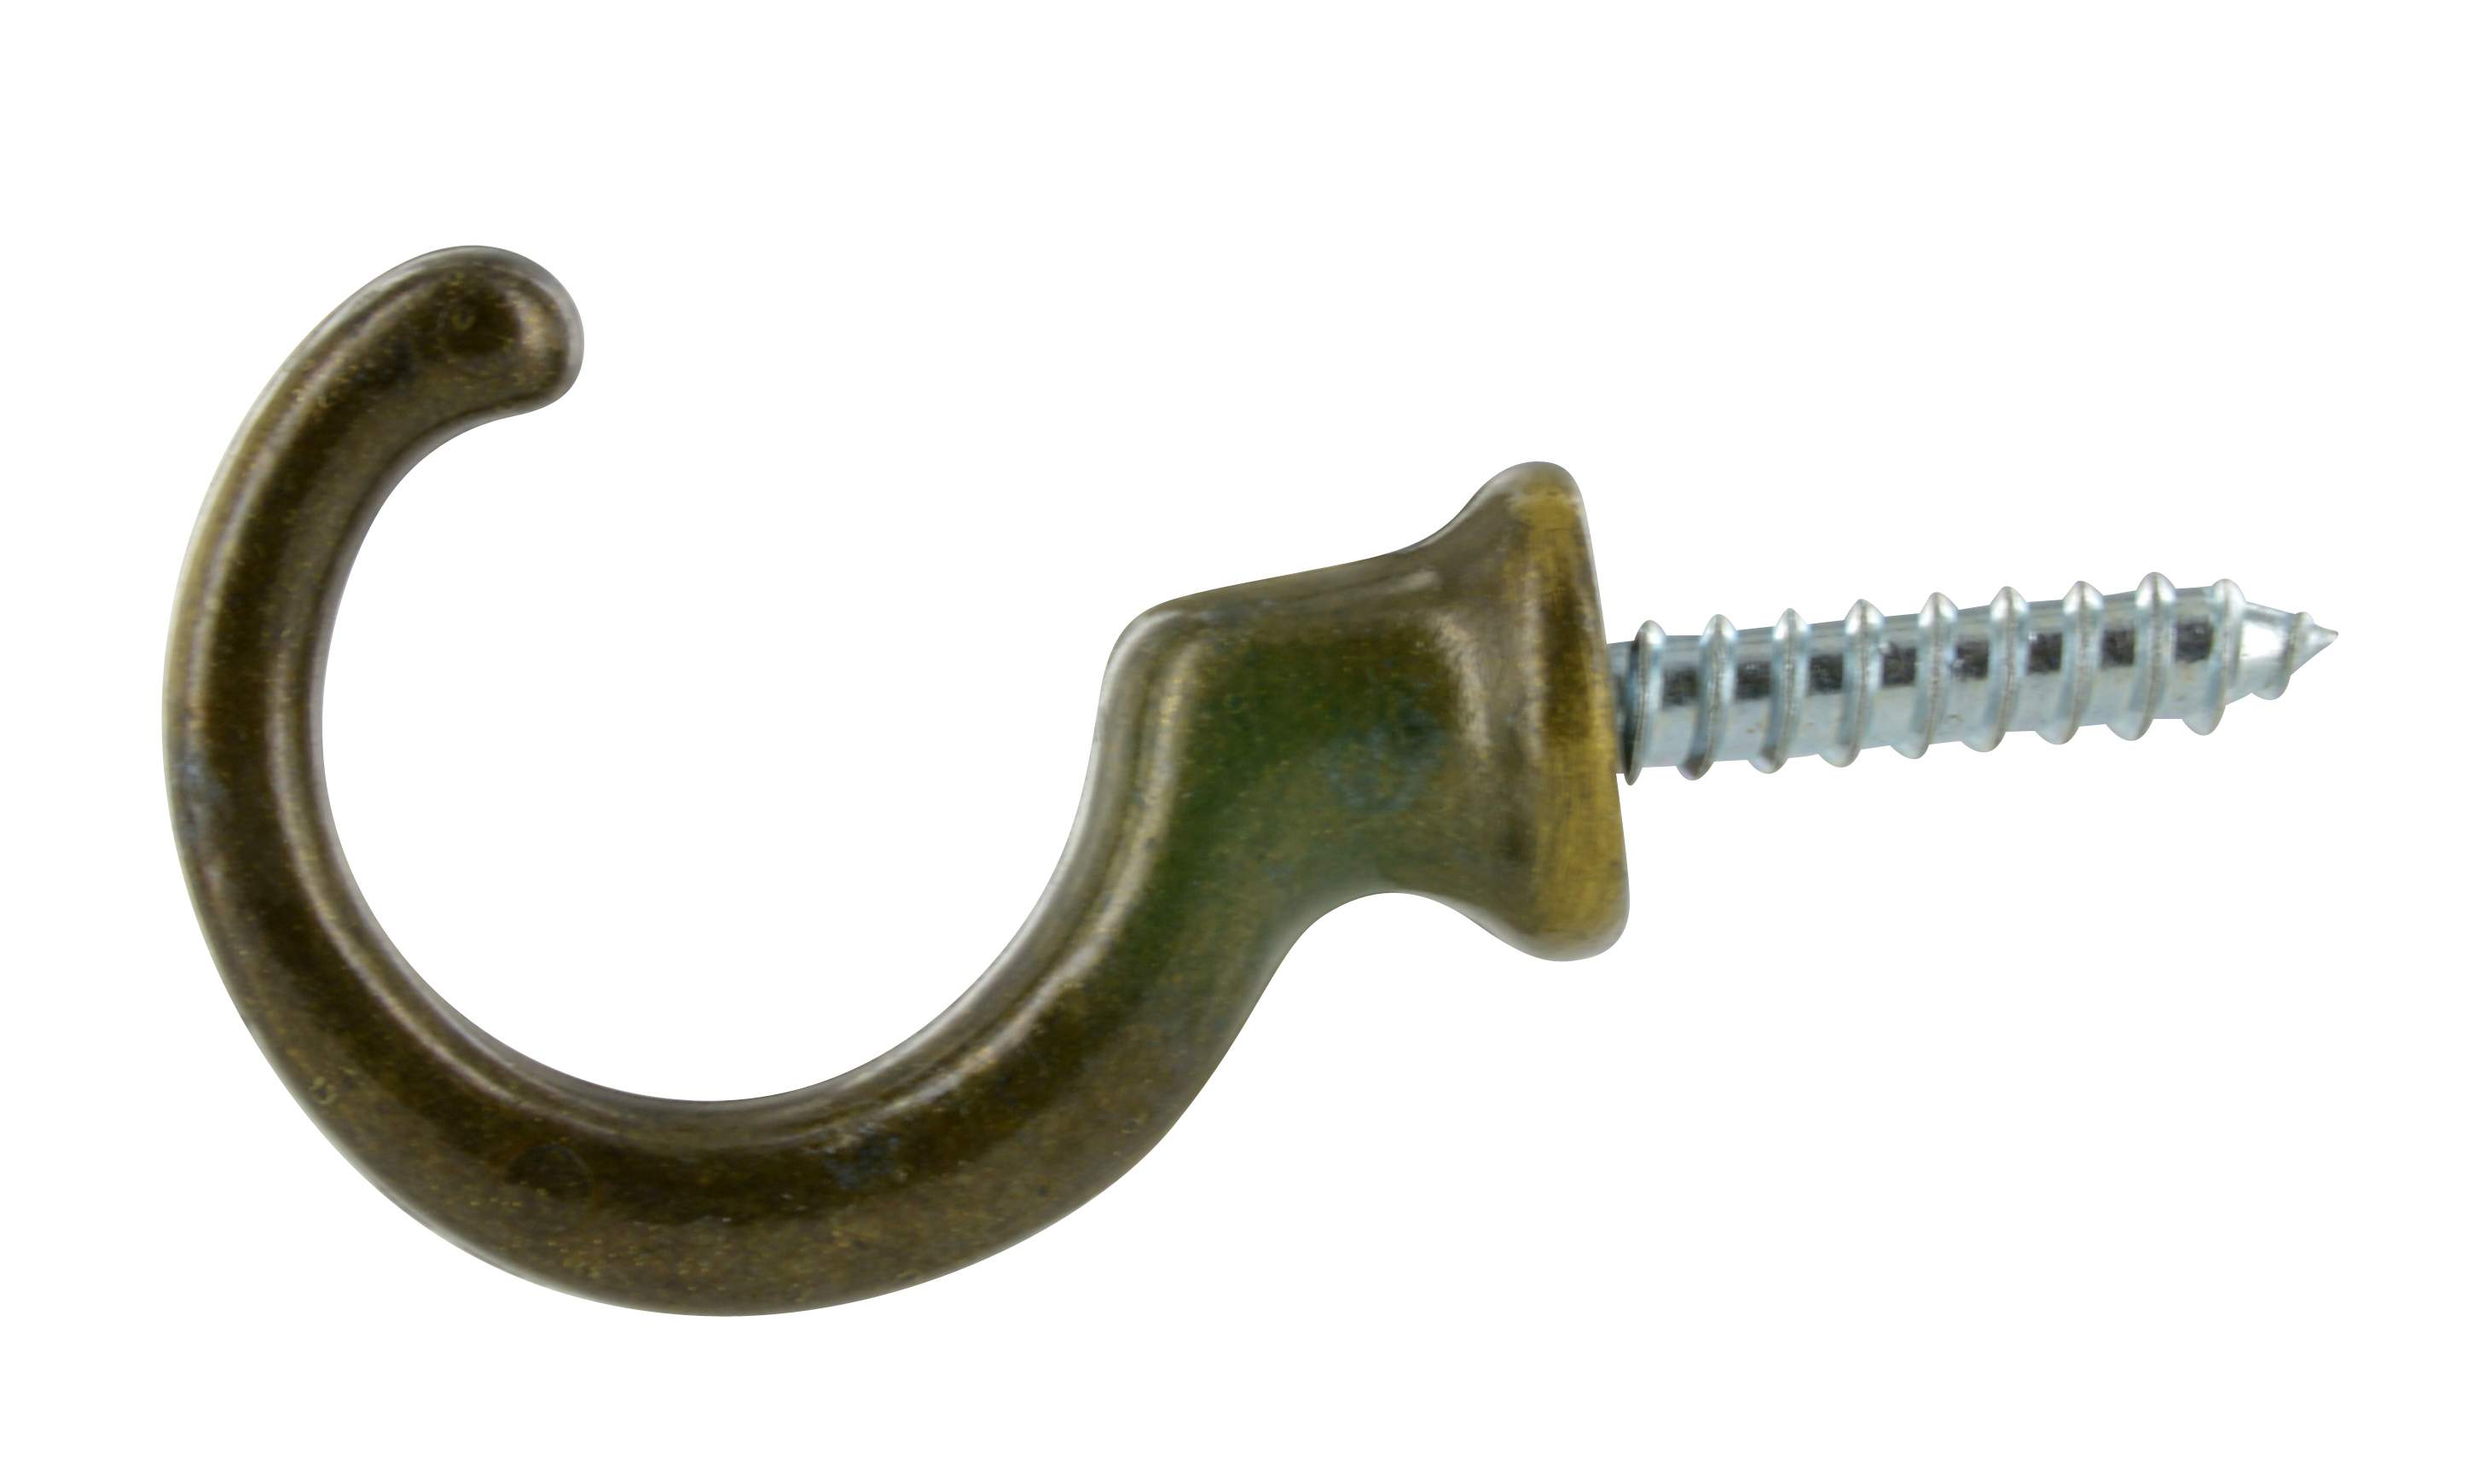 Gancio per tirante, bronzo zama, L.35mm, H.27mm, 2 pezzi con viti.